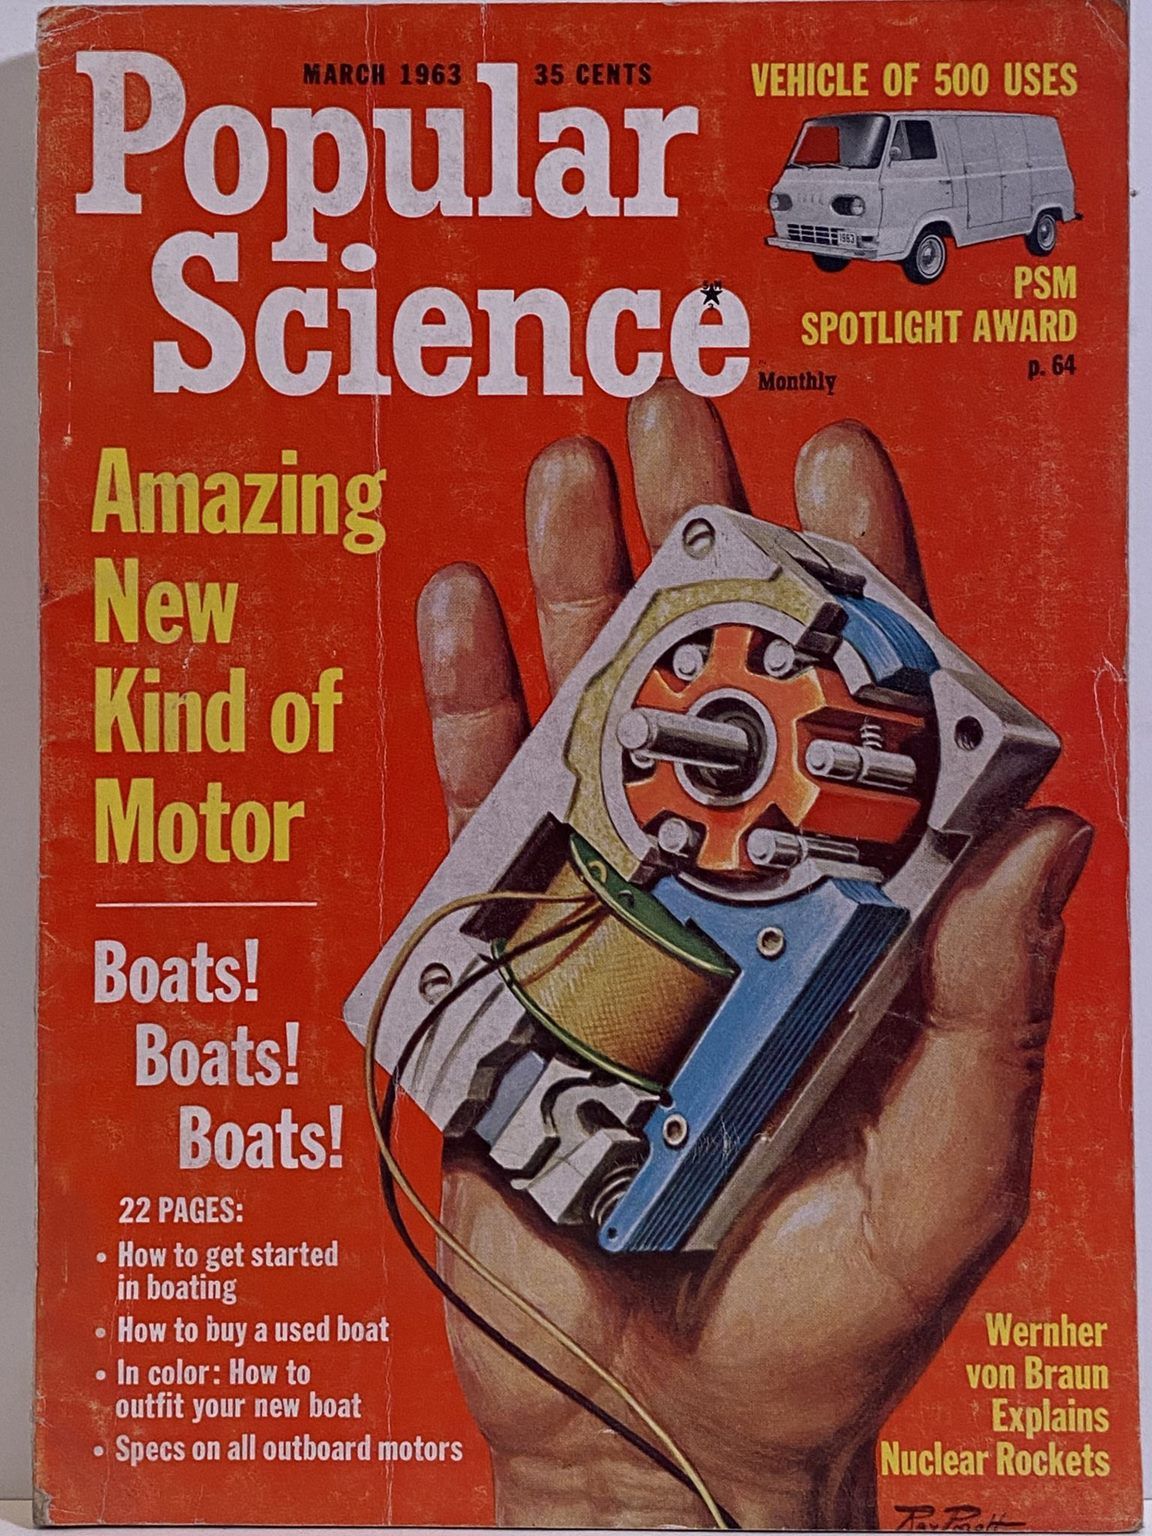 VINTAGE MAGAZINE: Popular Science, Vol. 182, No. 3 - March 1963